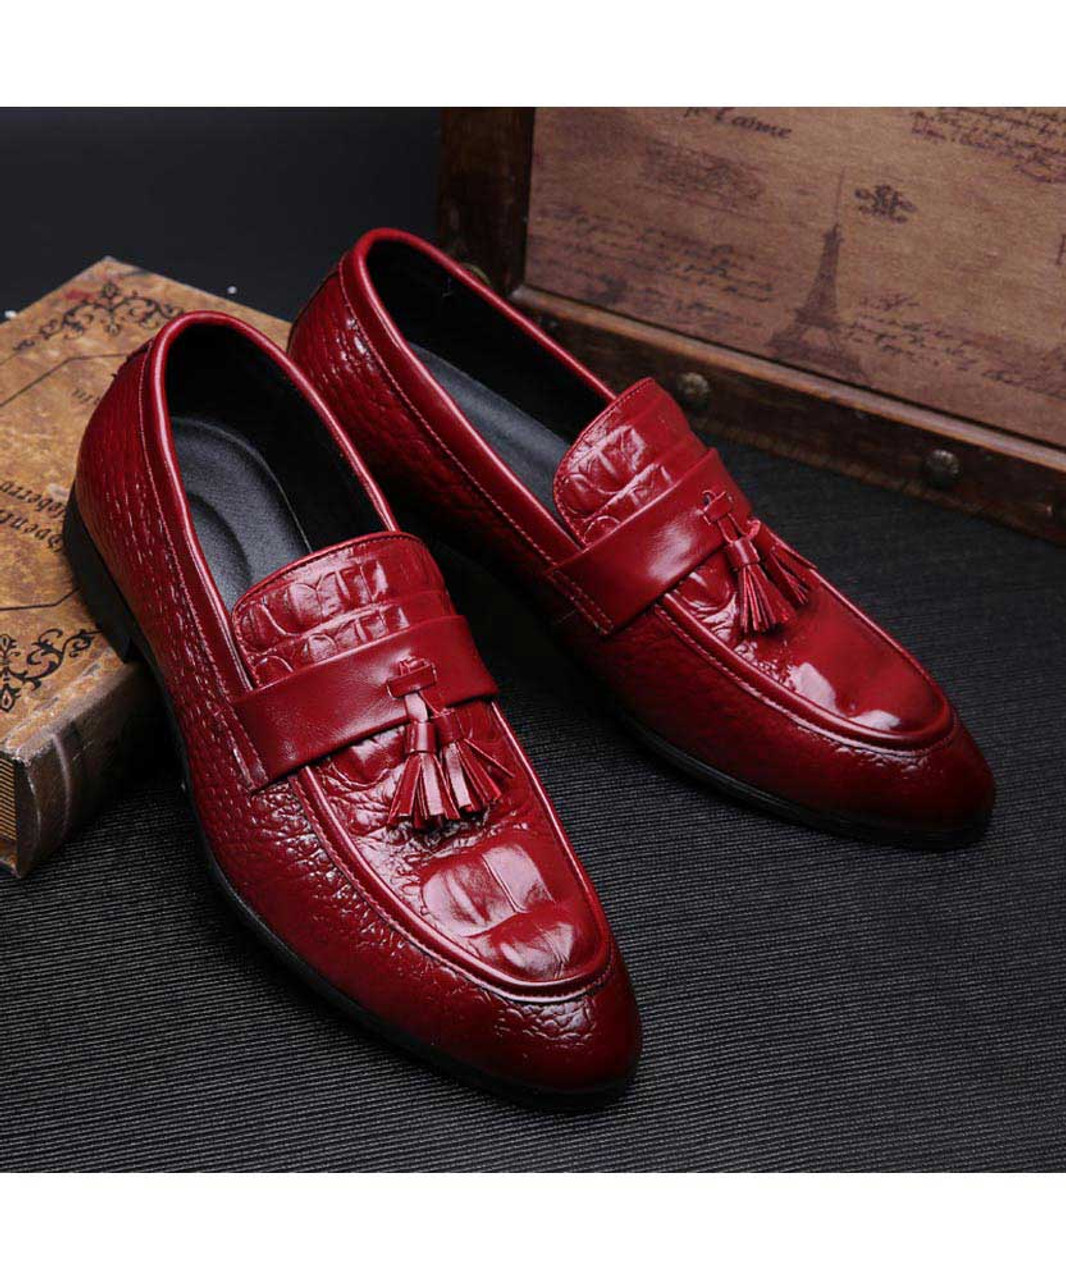 Red crocodile skin pattern tassel slip on dress shoe | Mens dress shoes ...